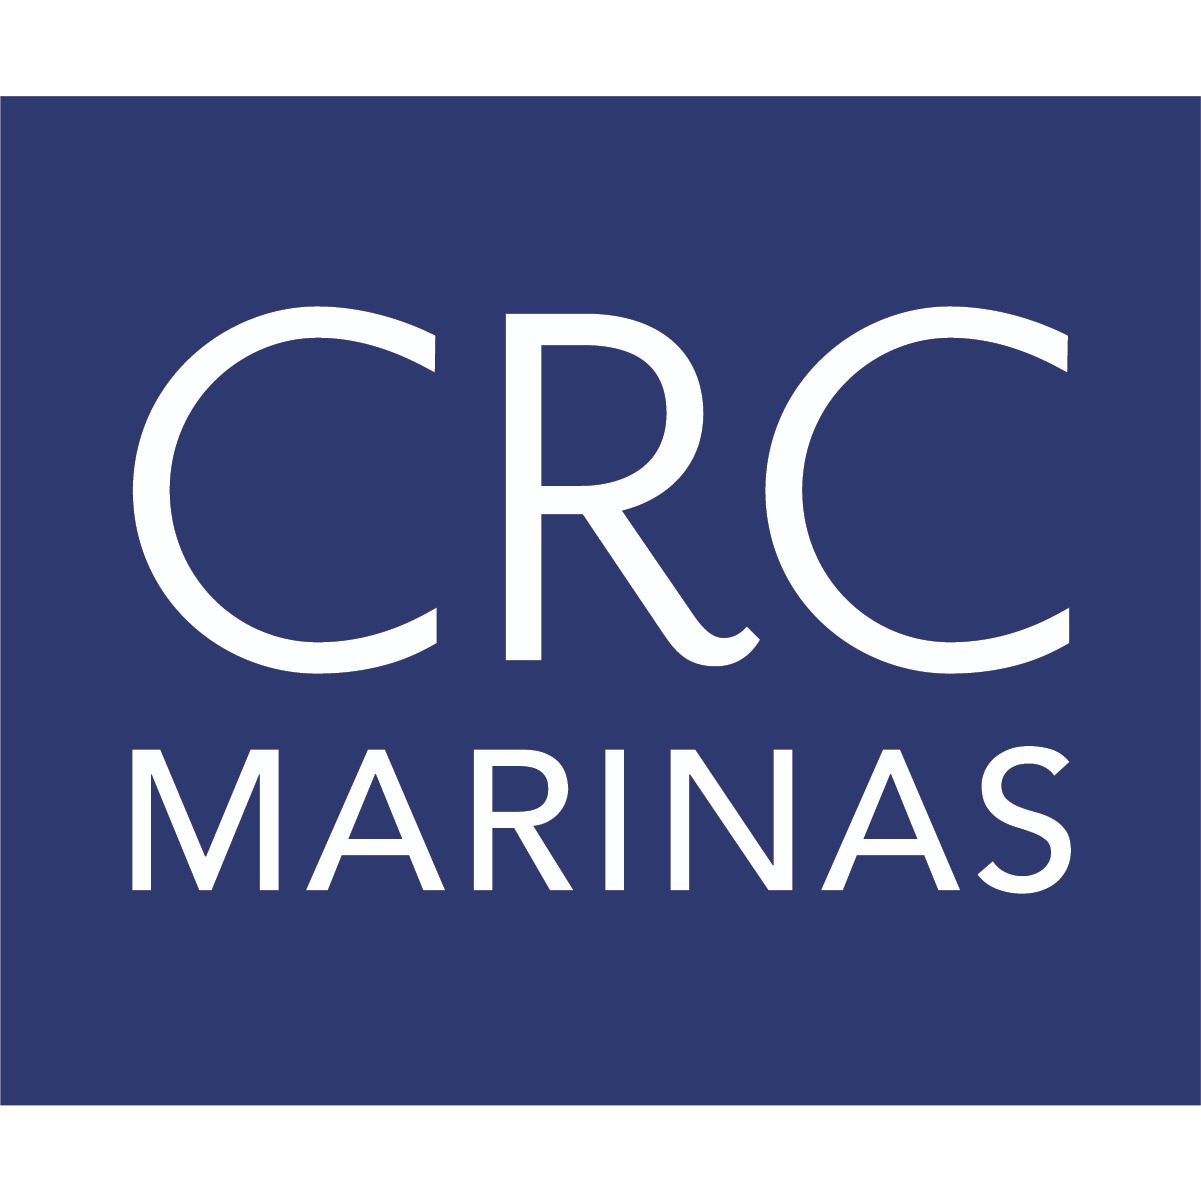 CRC Marinas - Corona Del Mar, CA 92625 - (949)721-0111 | ShowMeLocal.com